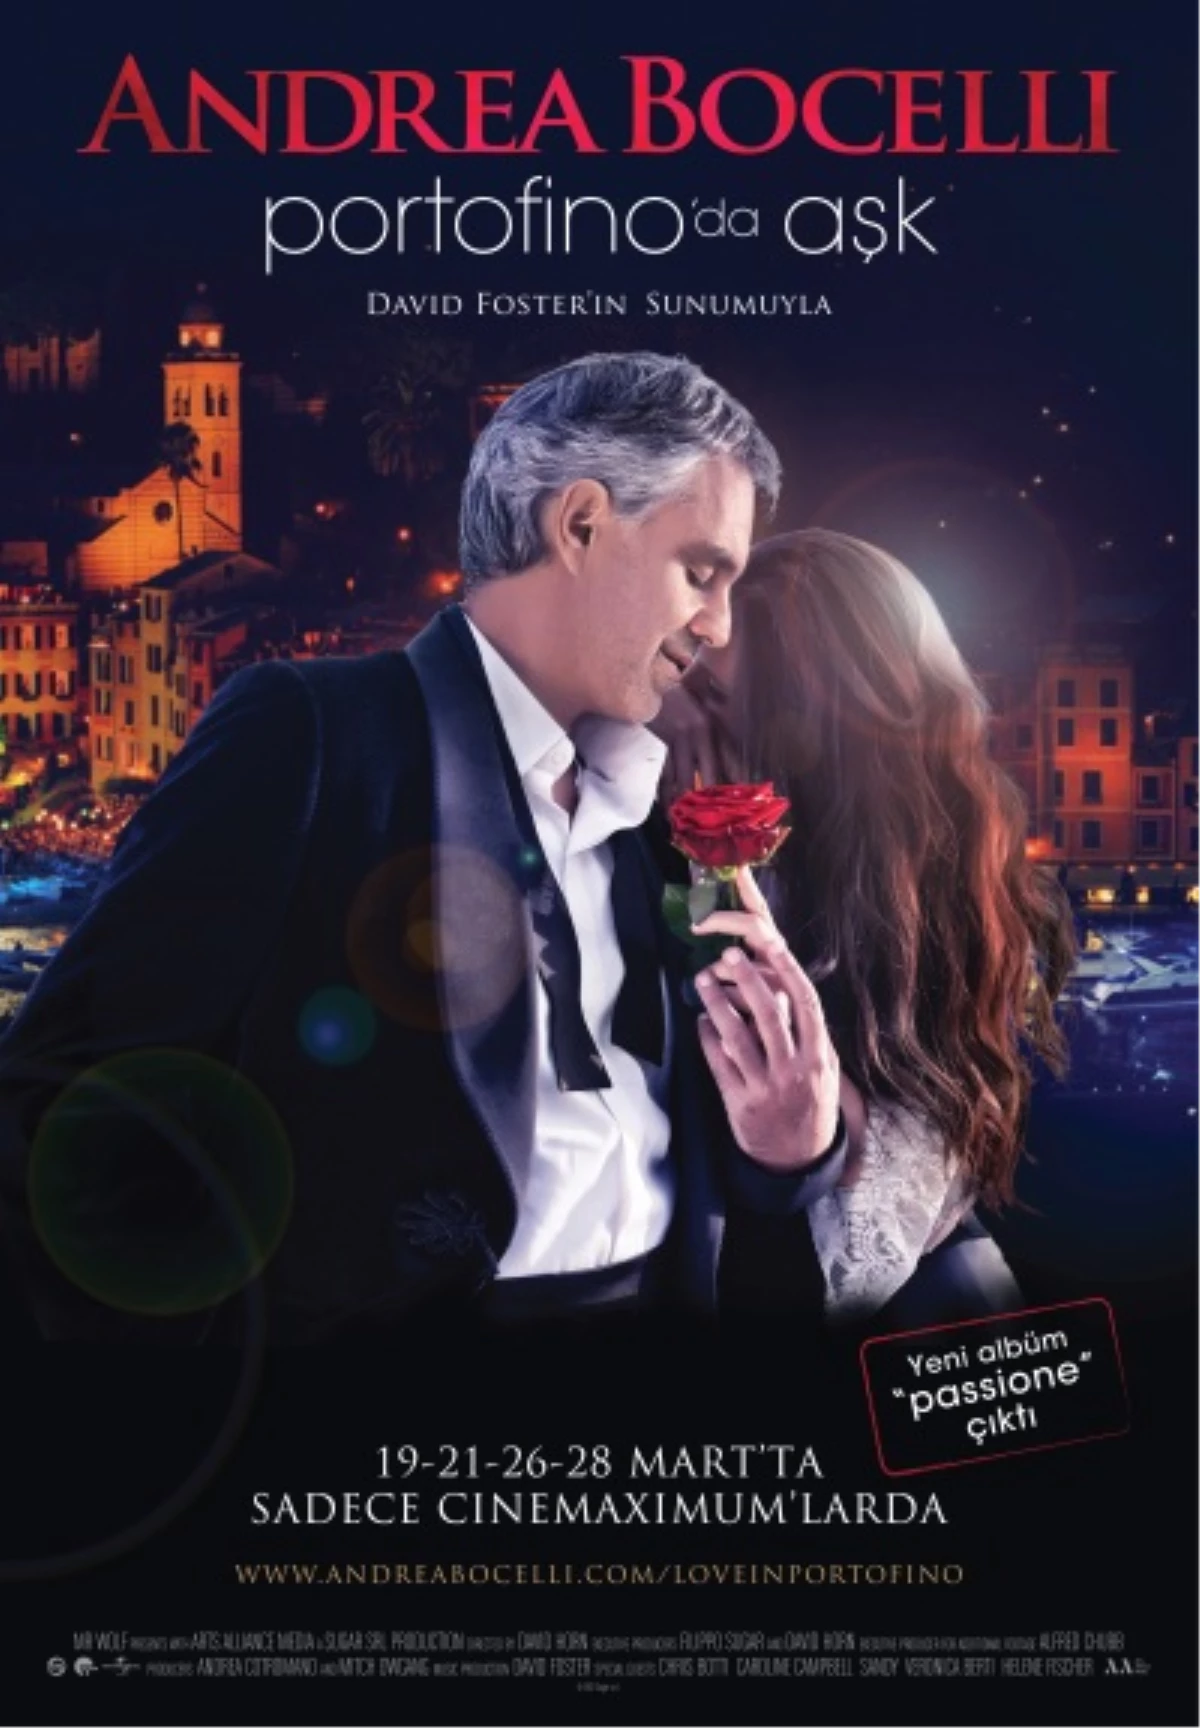 Andrea Bocelli "Portofino\'da Aşk"